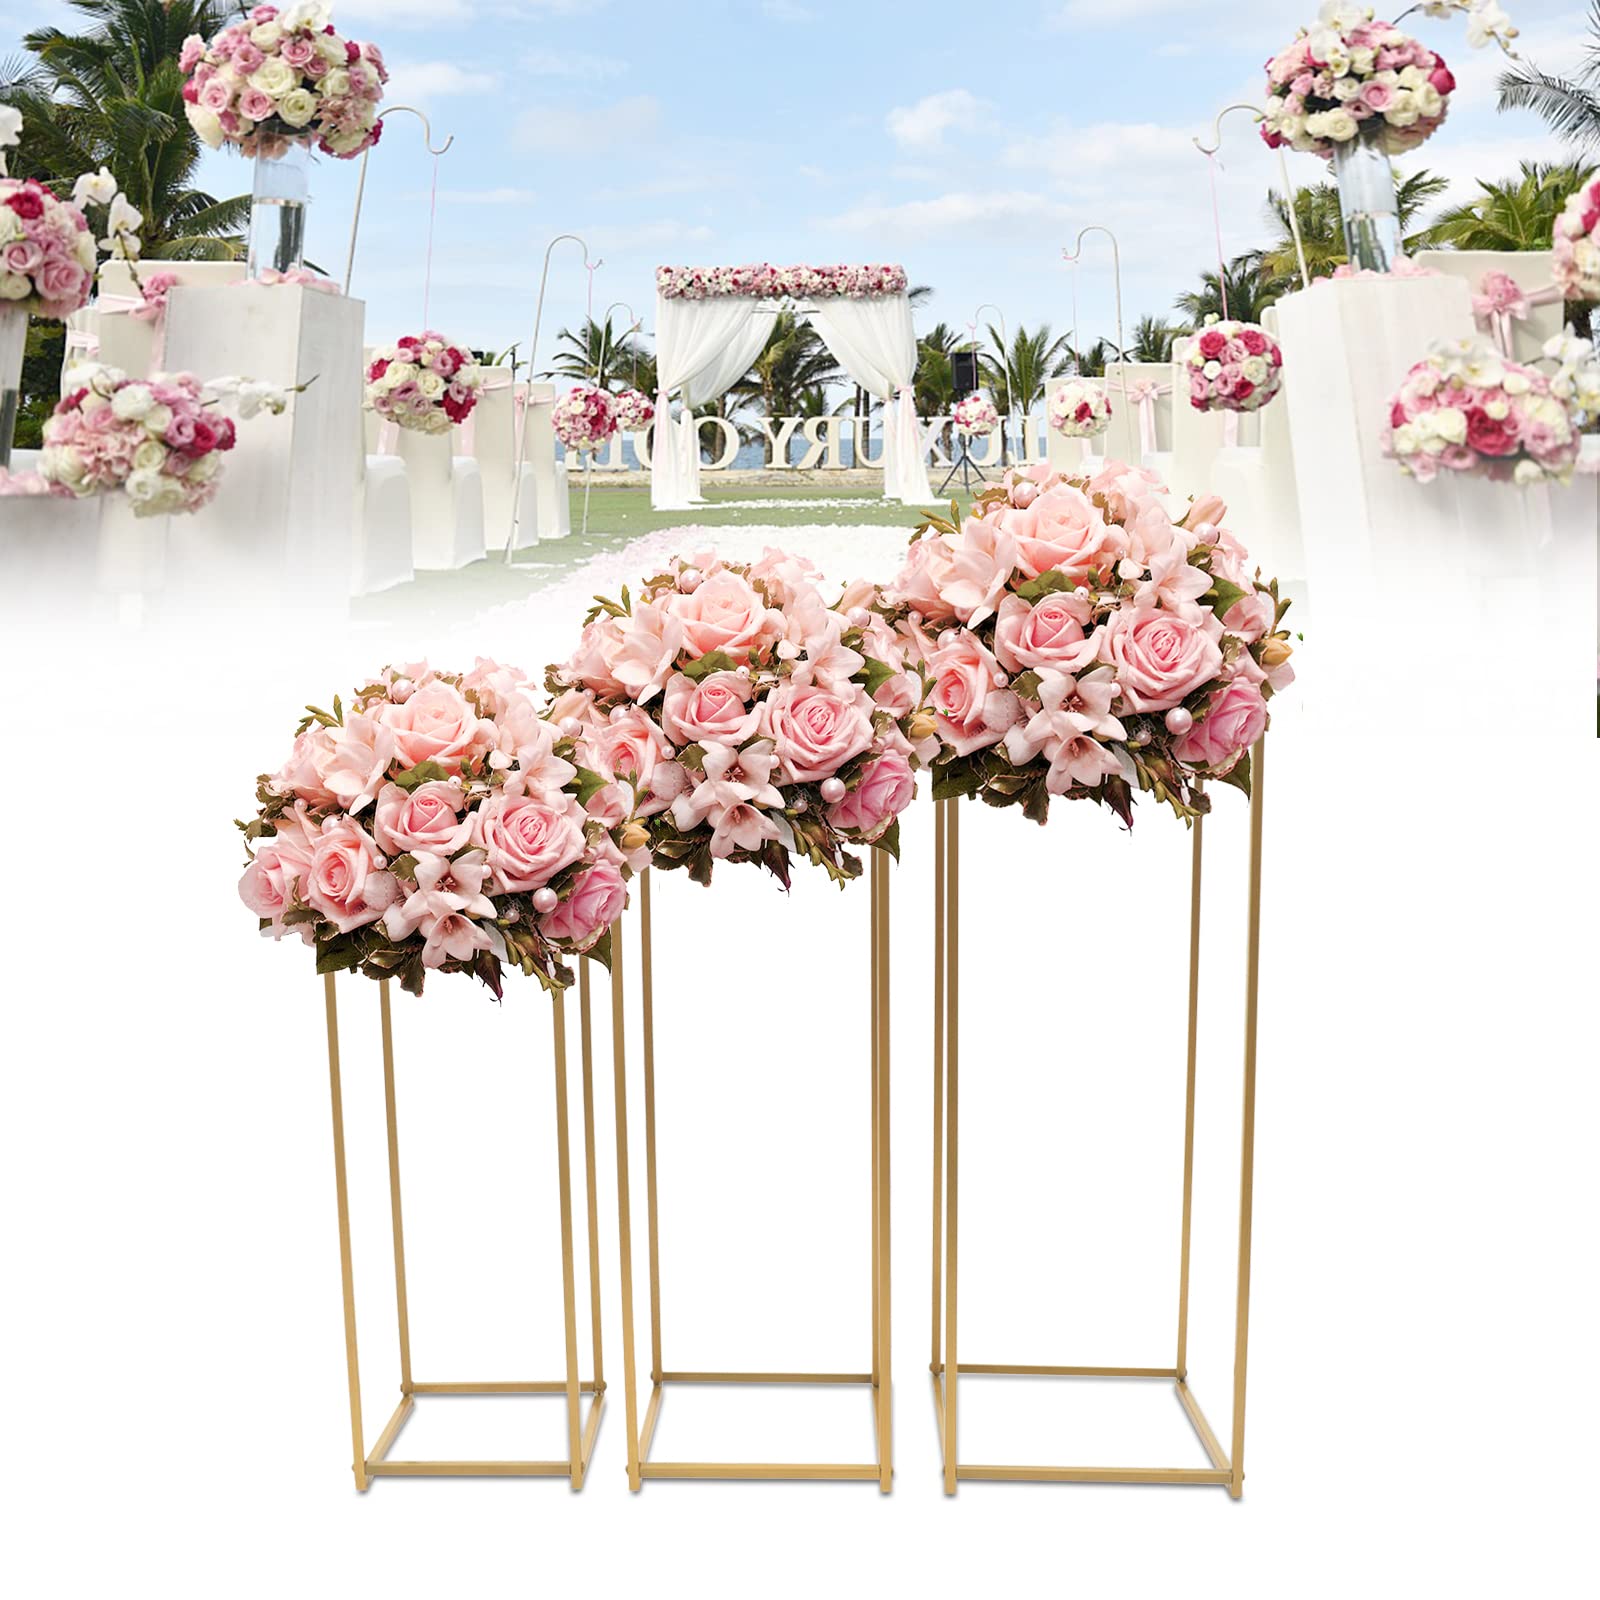 Lot de 3 supports de fleurs en métal pour mariage - 50 cm - 60 cm - 70 cm - Pour la maison, les fête